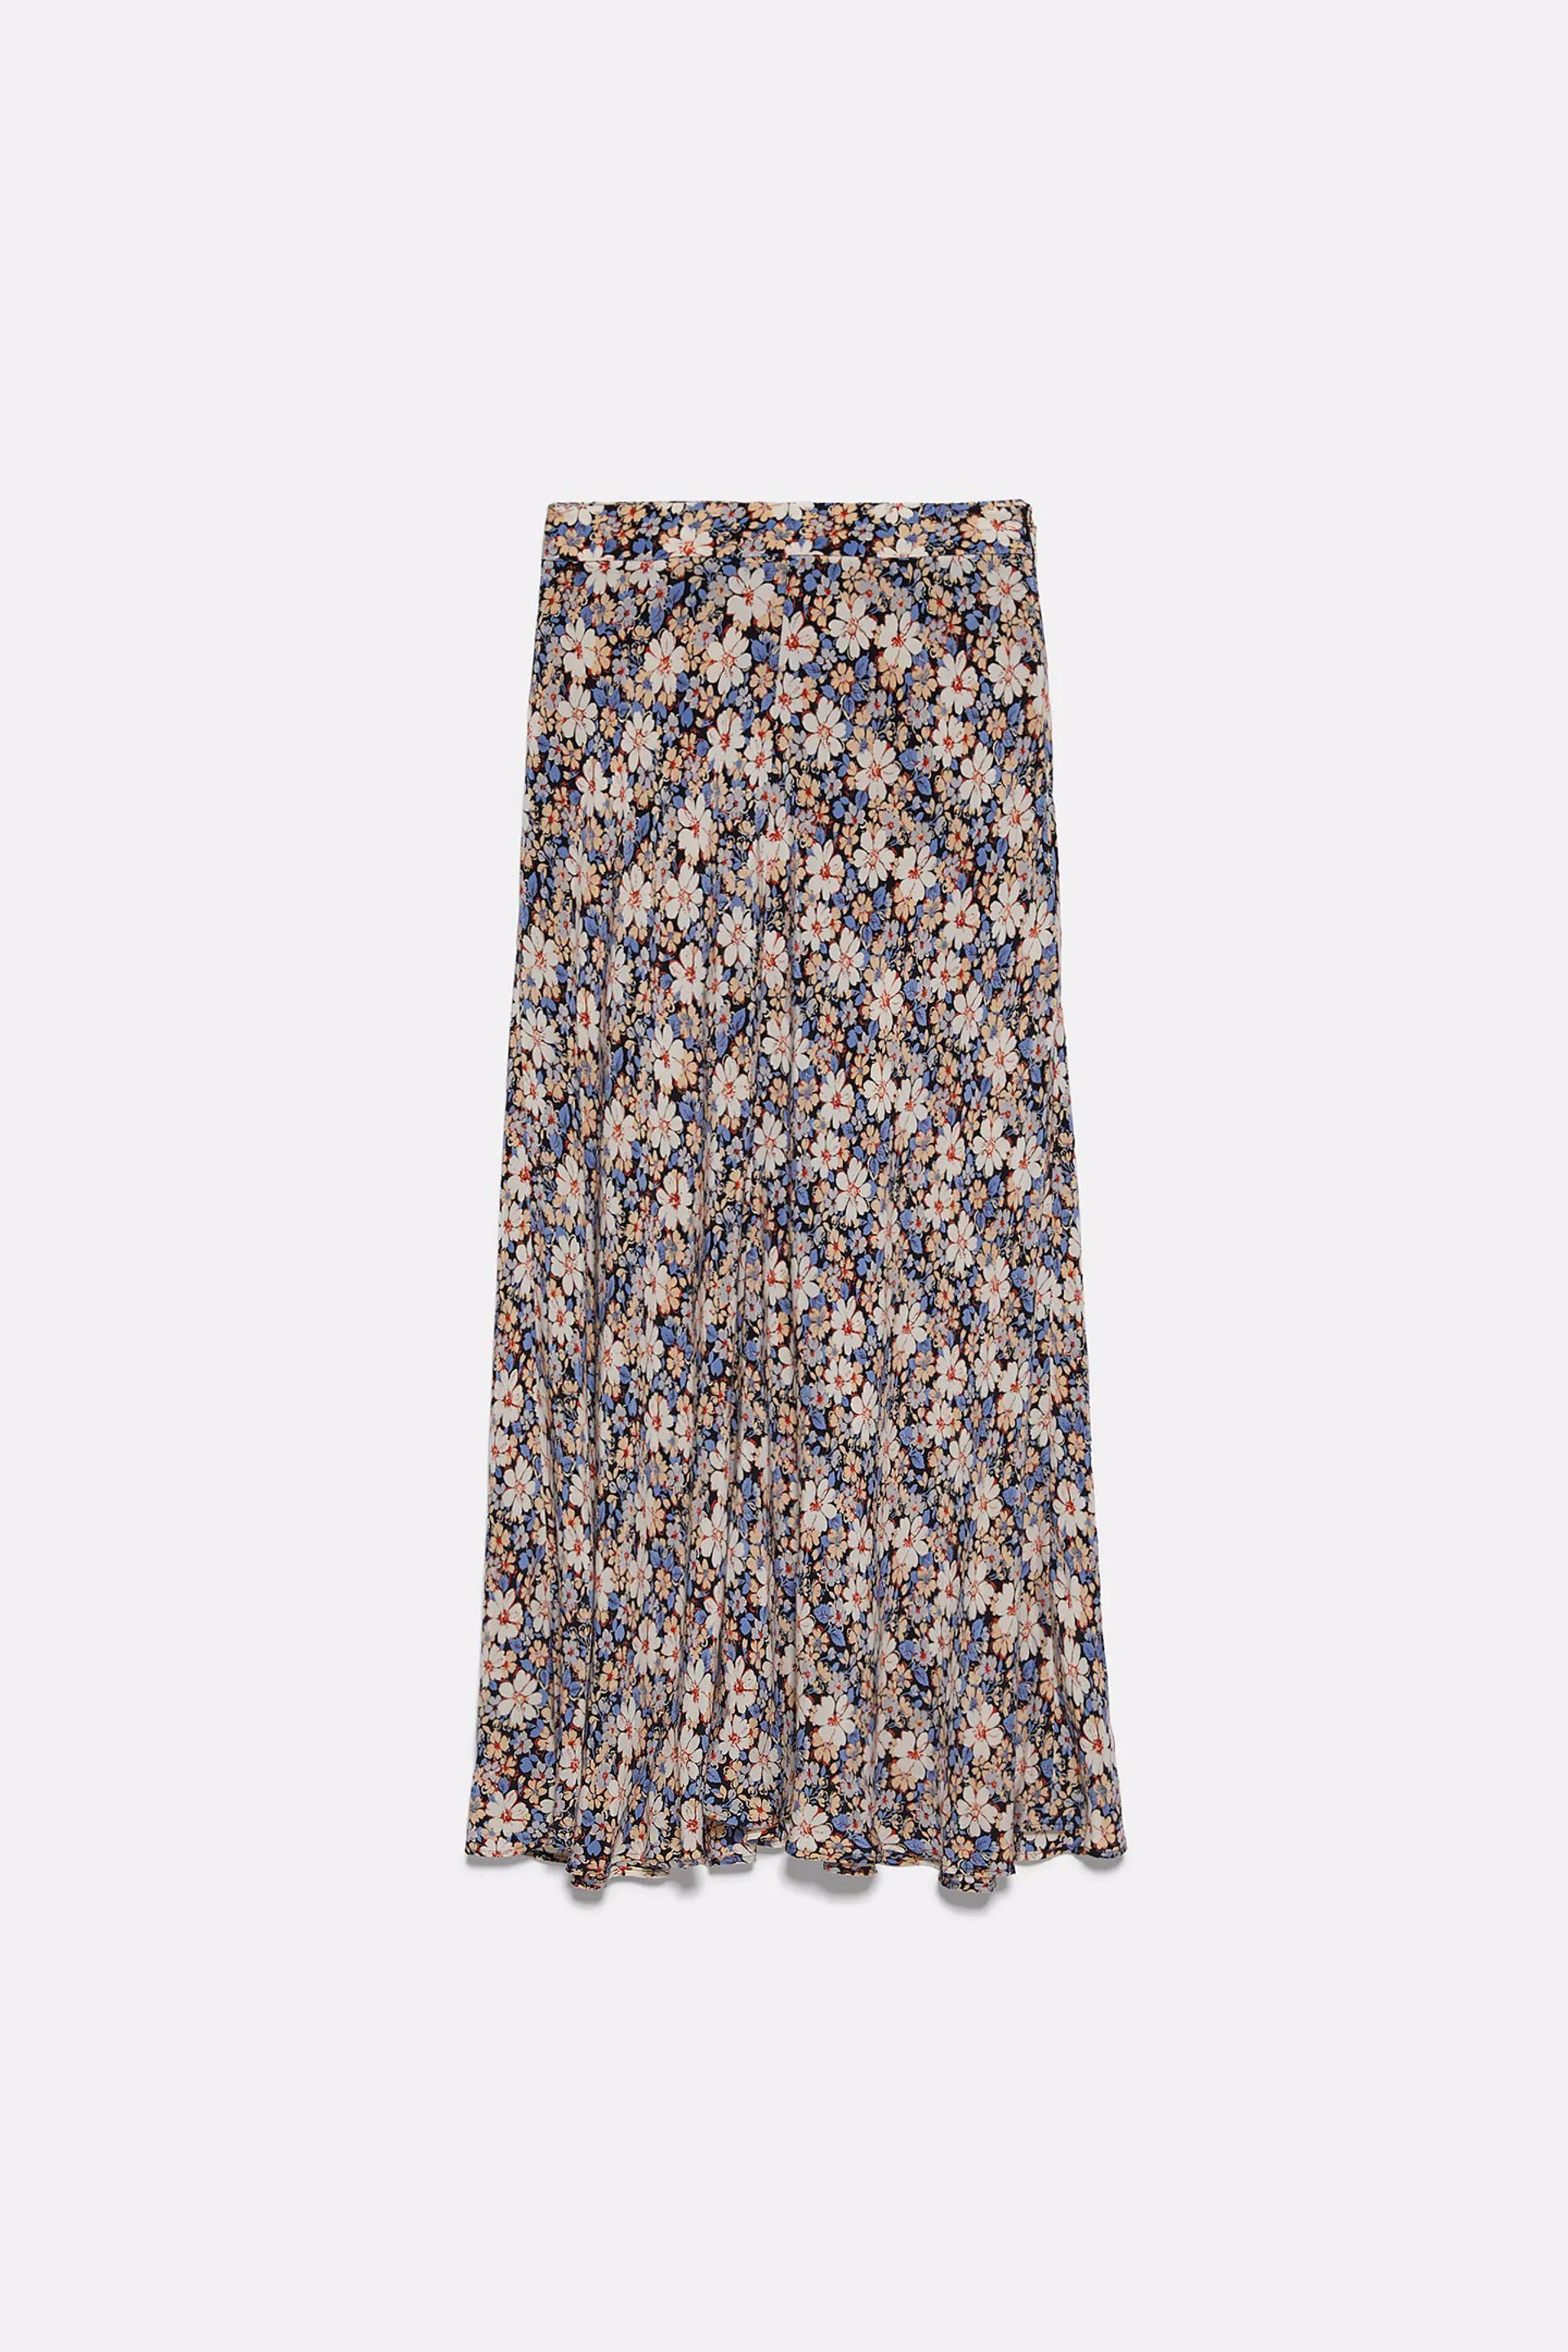 falda flores Zara 39,95€